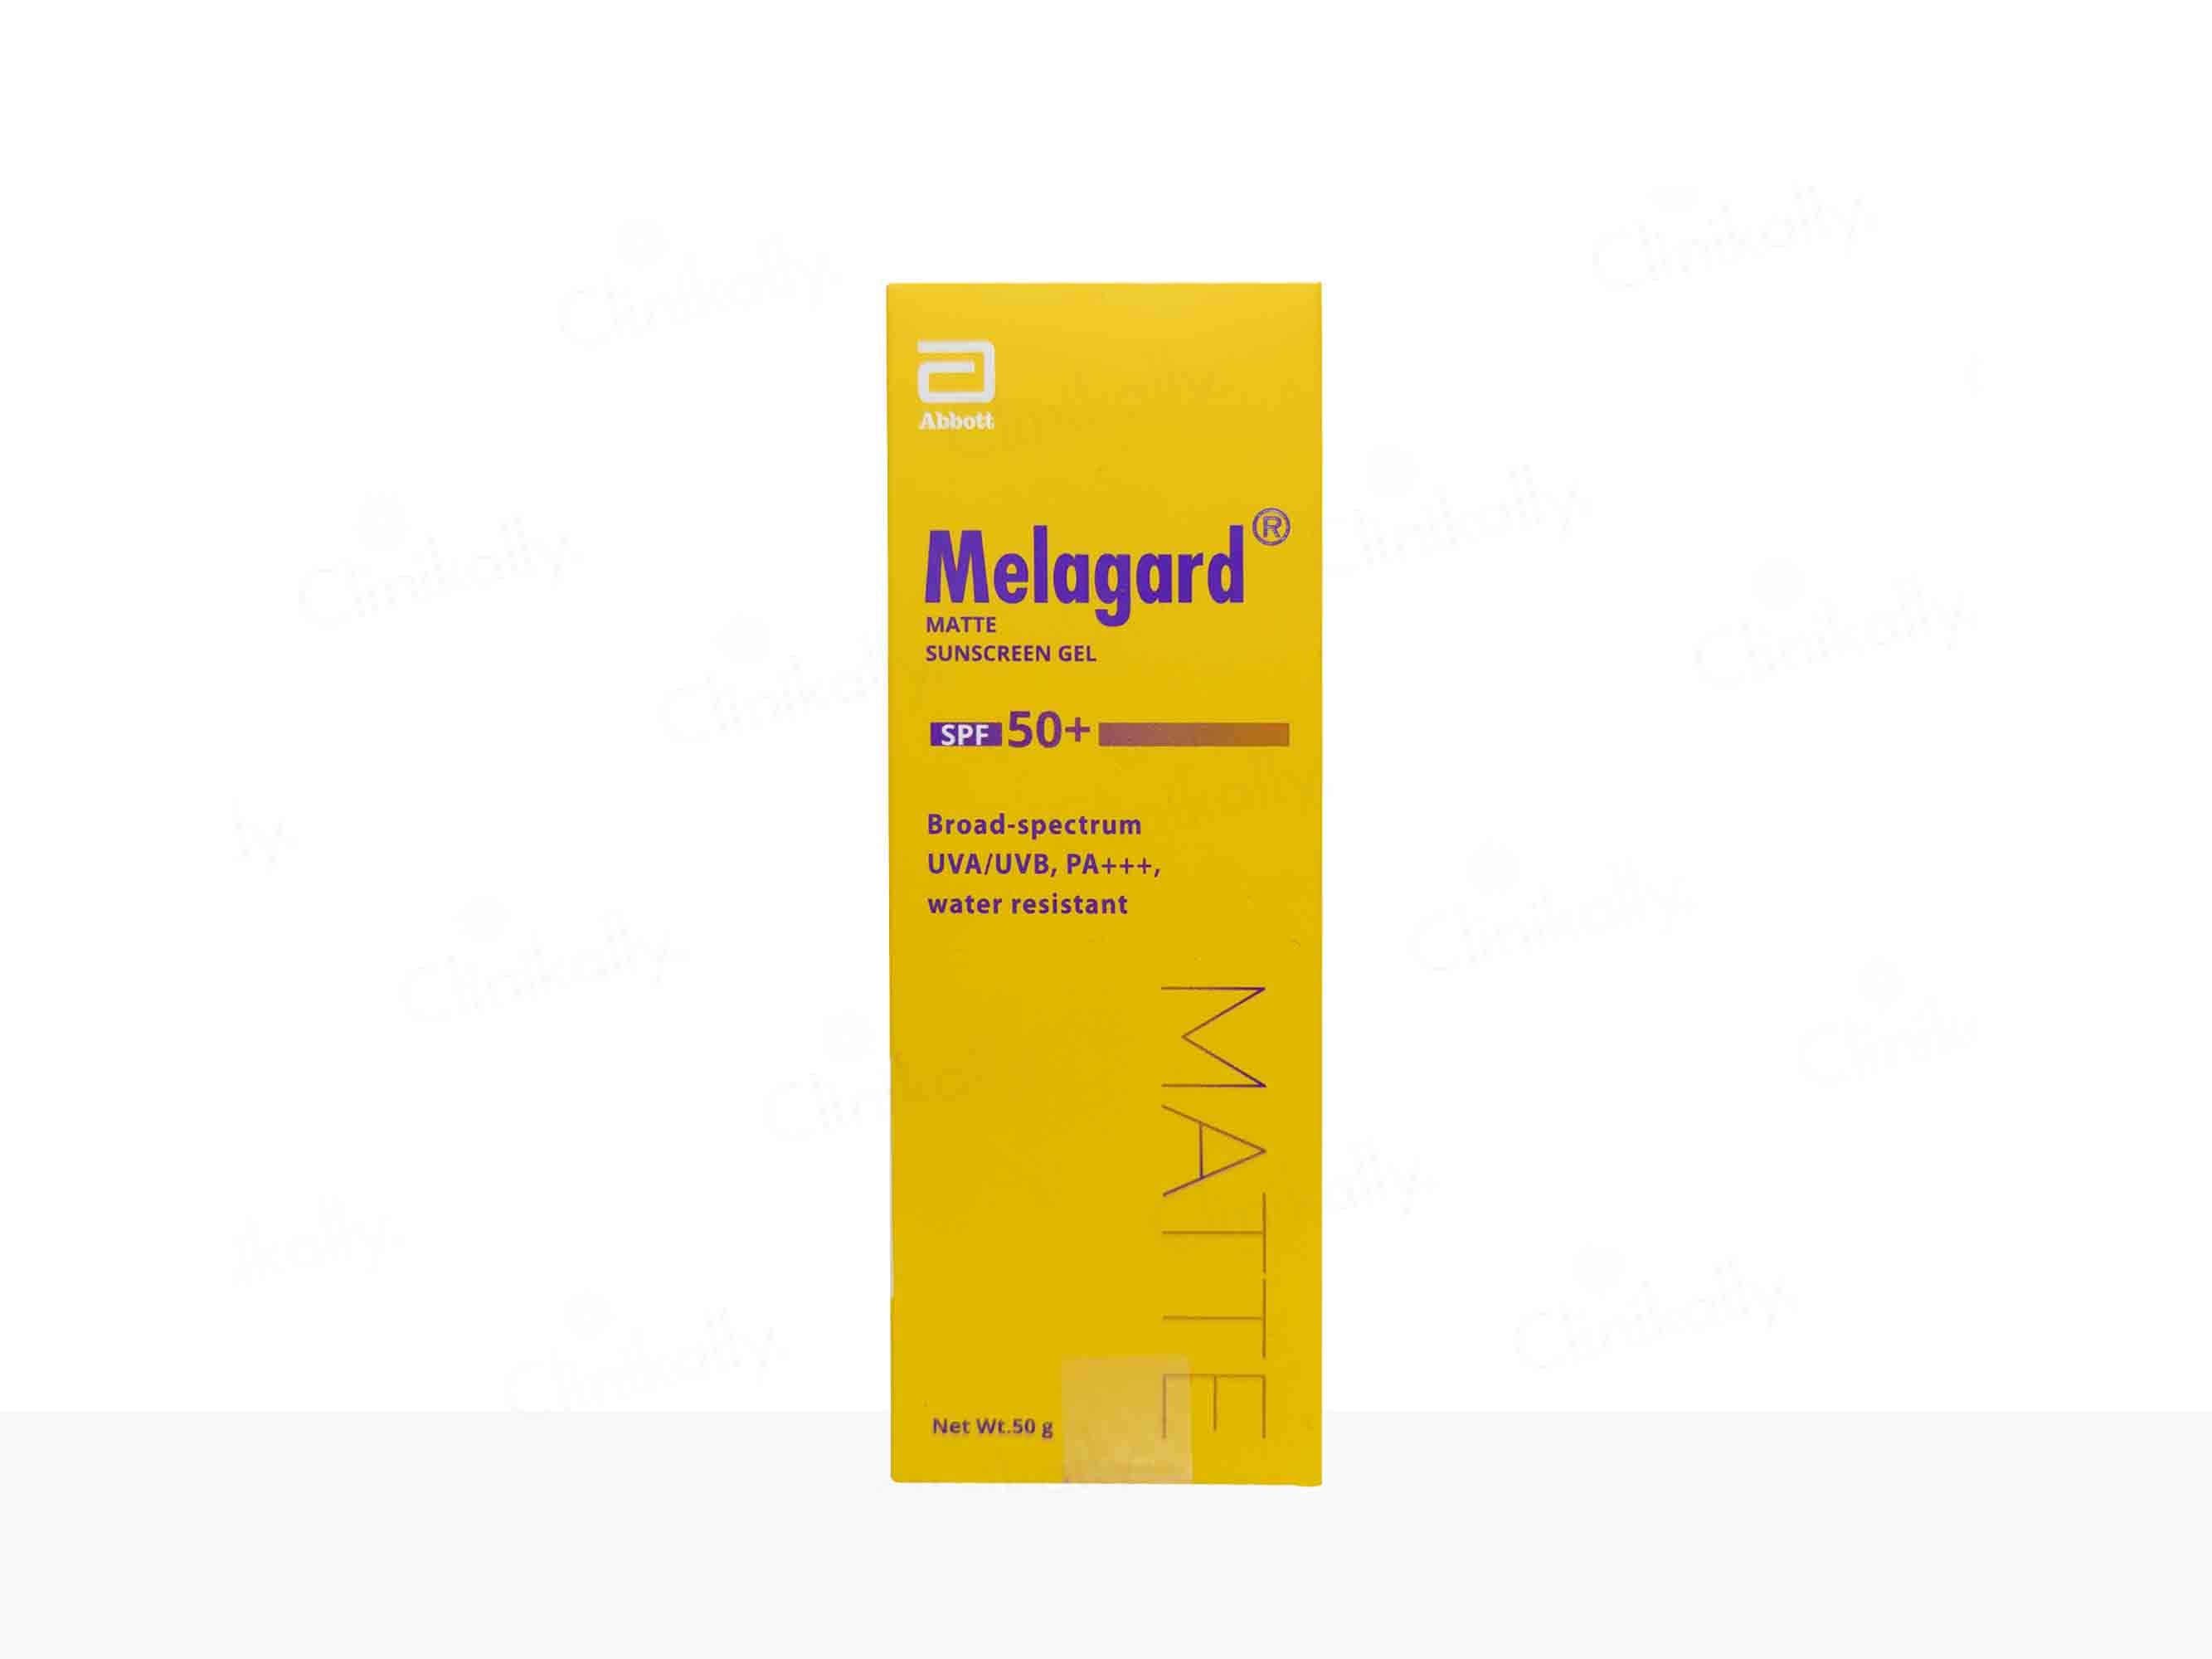 Melagard Matte Sunscreen Gel SPF 50+ PA+++